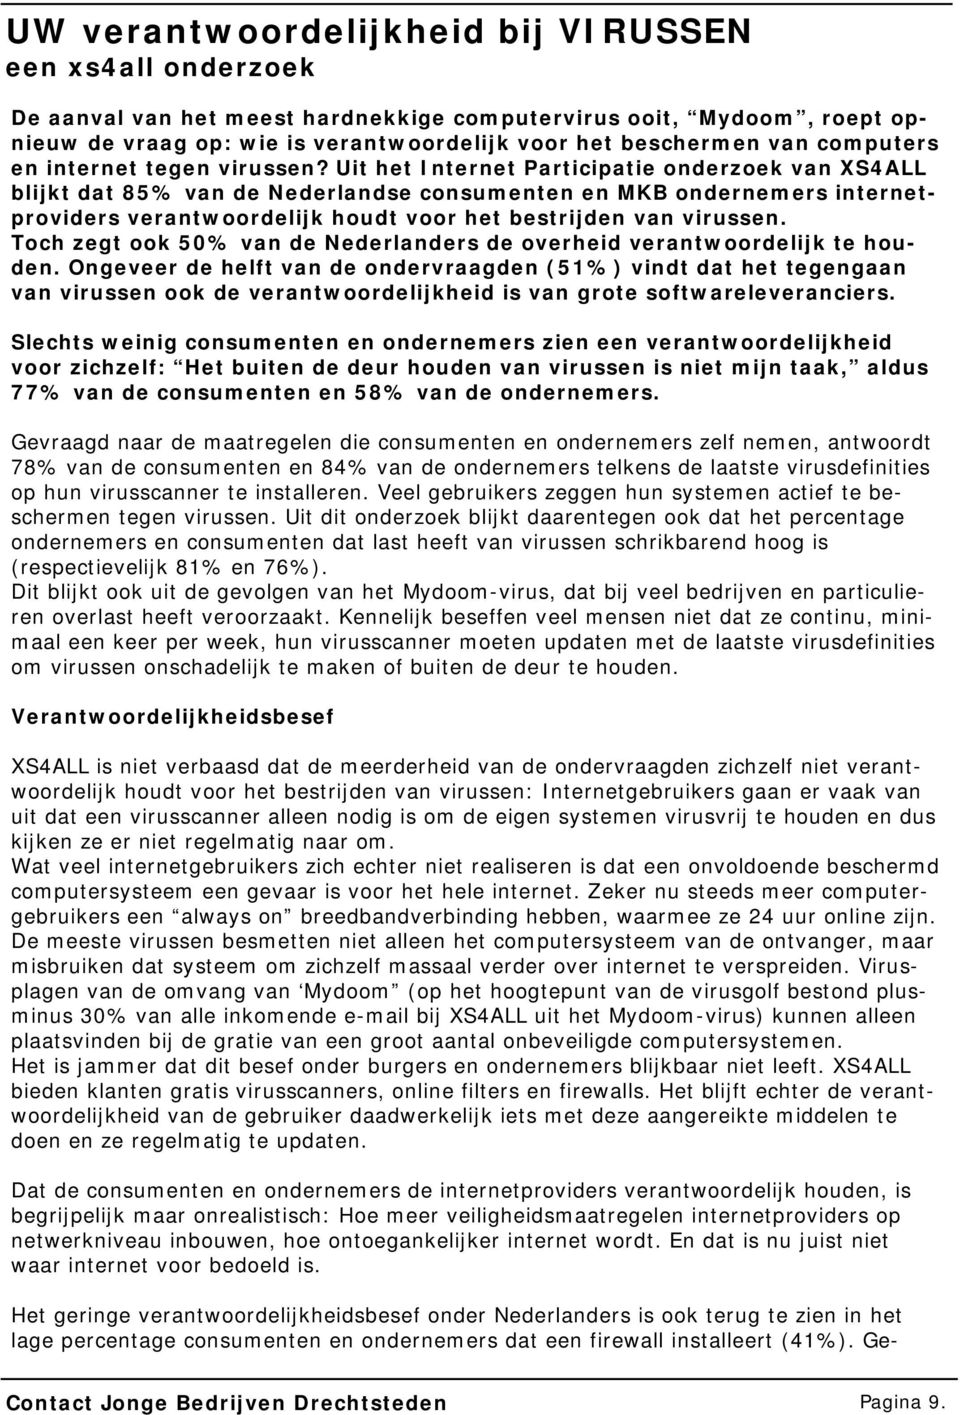 Uit het Internet Participatie onderzoek van XS4ALL blijkt dat 85% van de Nederlandse consumenten en MKB ondernemers internetproviders verantwoordelijk houdt voor het bestrijden van virussen.